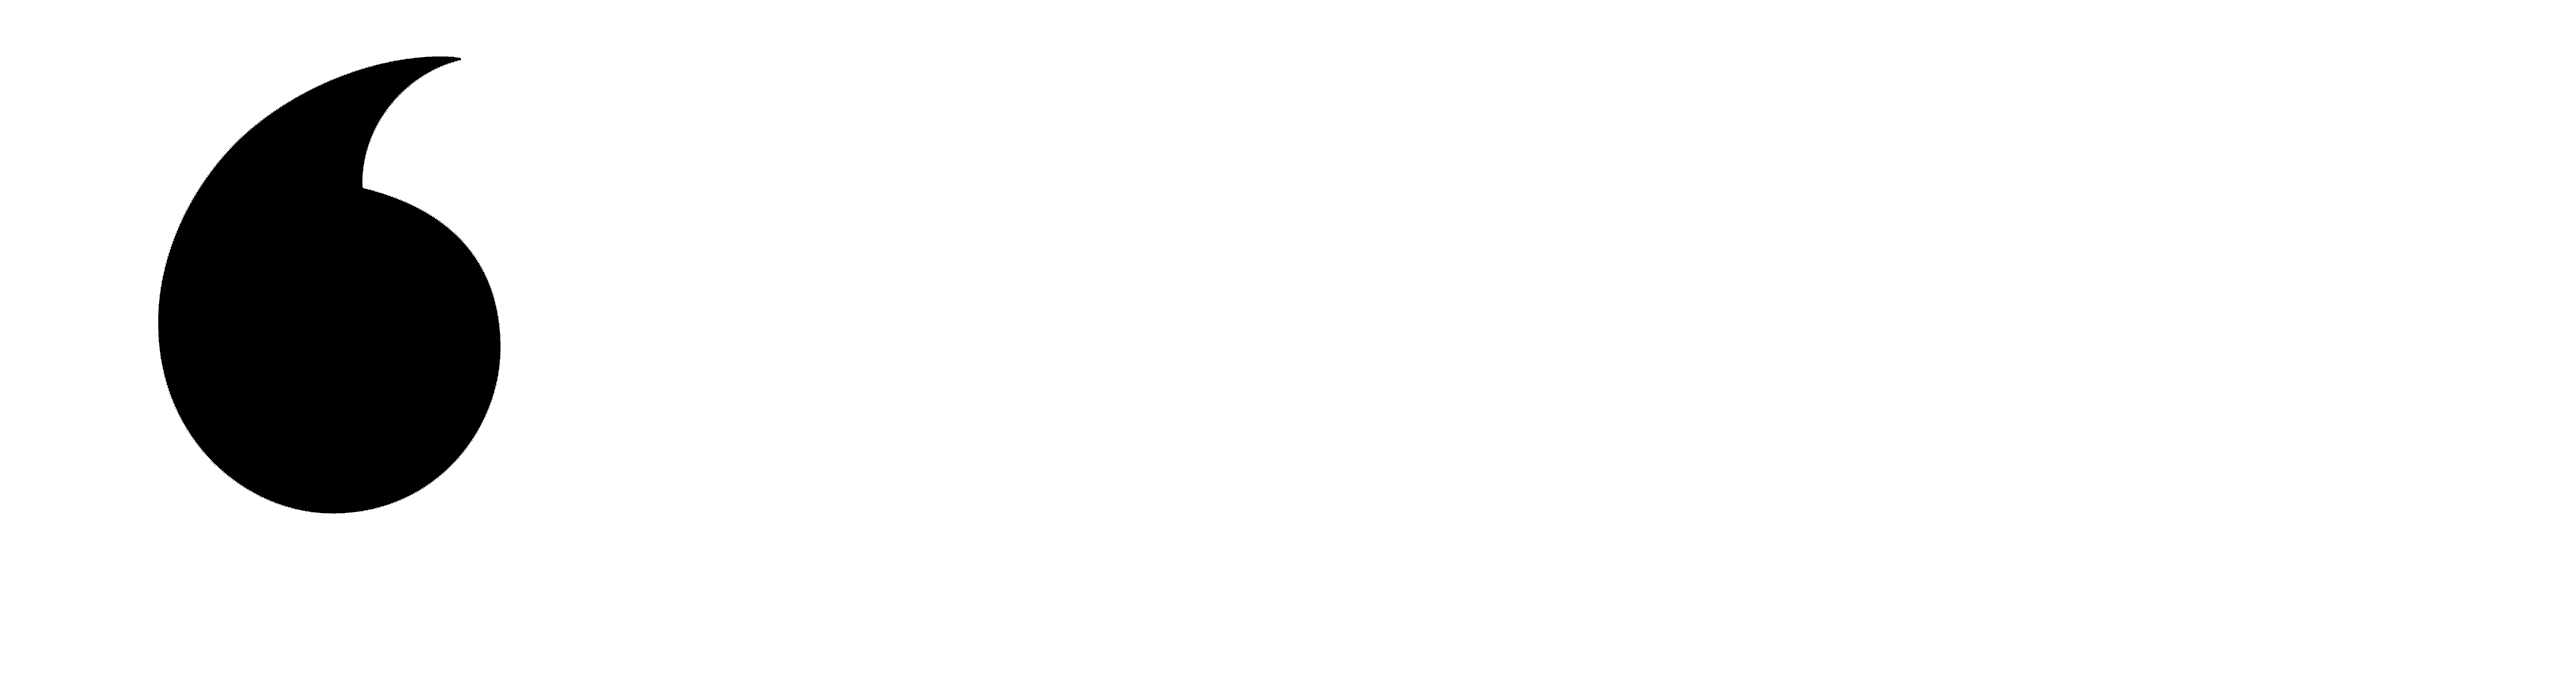 Vodafone Logo White